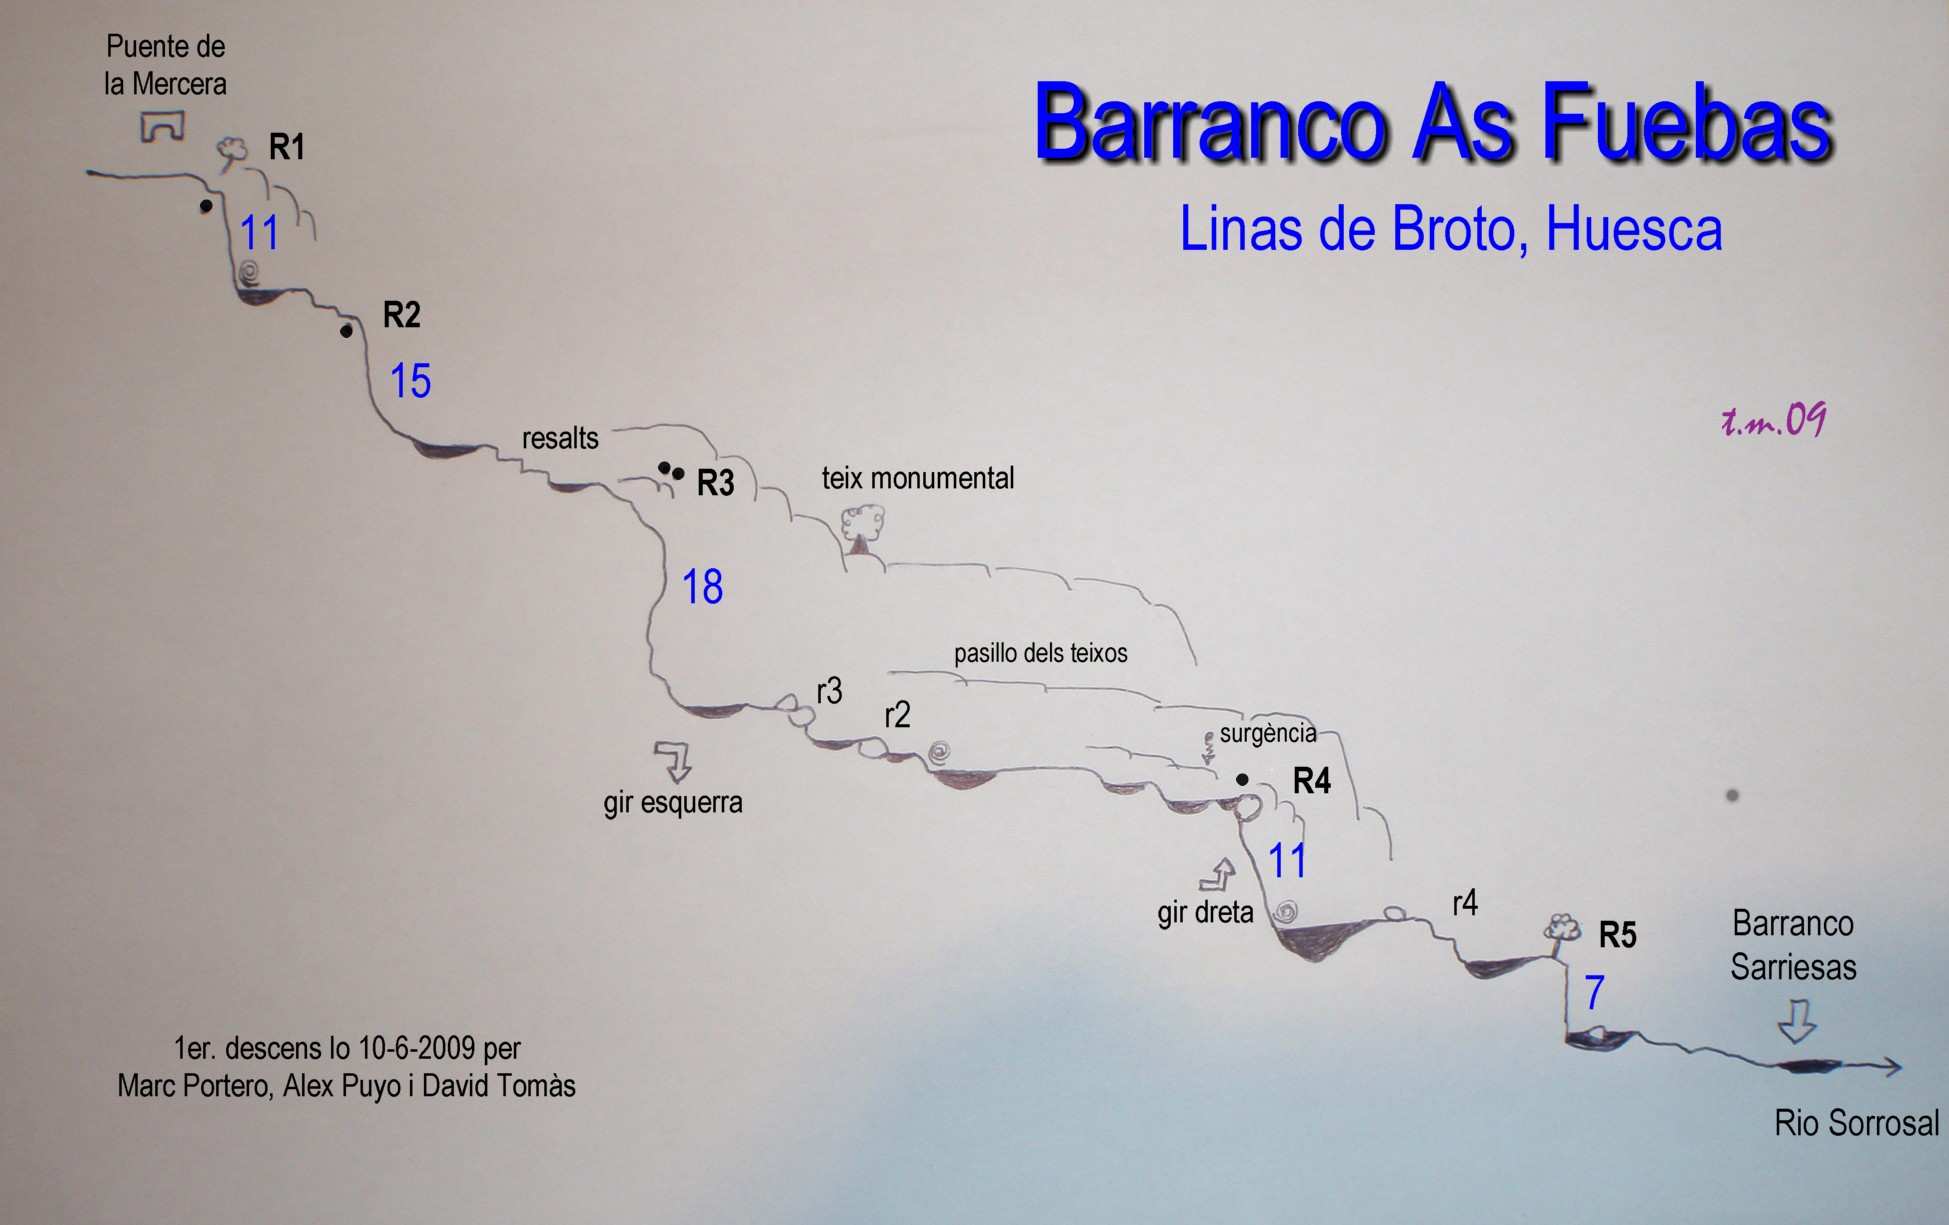 Barranco AS FUEBAS Cuerdas: 2x 25 mts. Horario de descenso: 1 a 2 horas Altura en inicio: 1500 mts. aproximadamente Desnivel de 100 mts. en 500 mts. de recorrido Observaciones:.